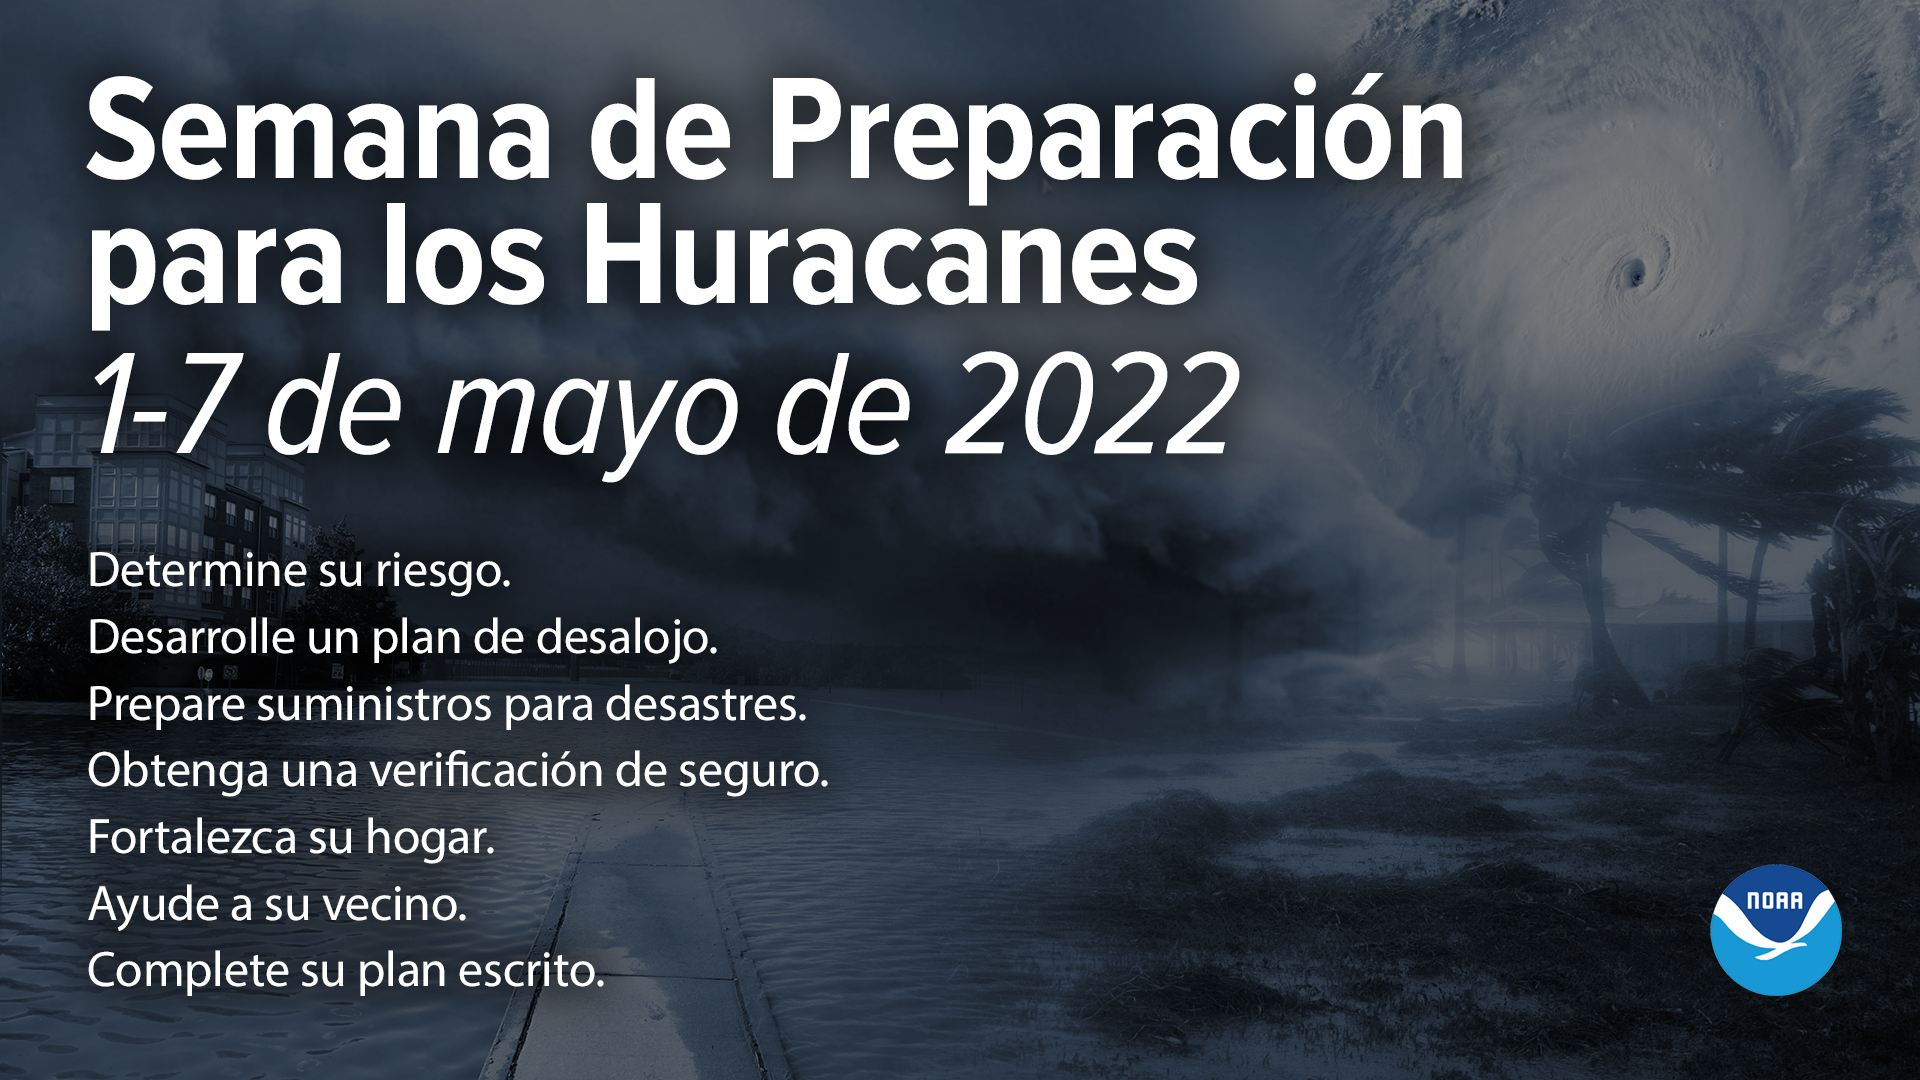 Semana de Preparación para los Huracanes, 1-7 de mayo de 2022. Determine su riesgo.   Desarrolle un plan de desalojo.   Prepare suministros para desastres. Obtenga una verificación de seguro.   Fortalezca su hogar.   Ayude a su vecino. Complete su plan escrito. 